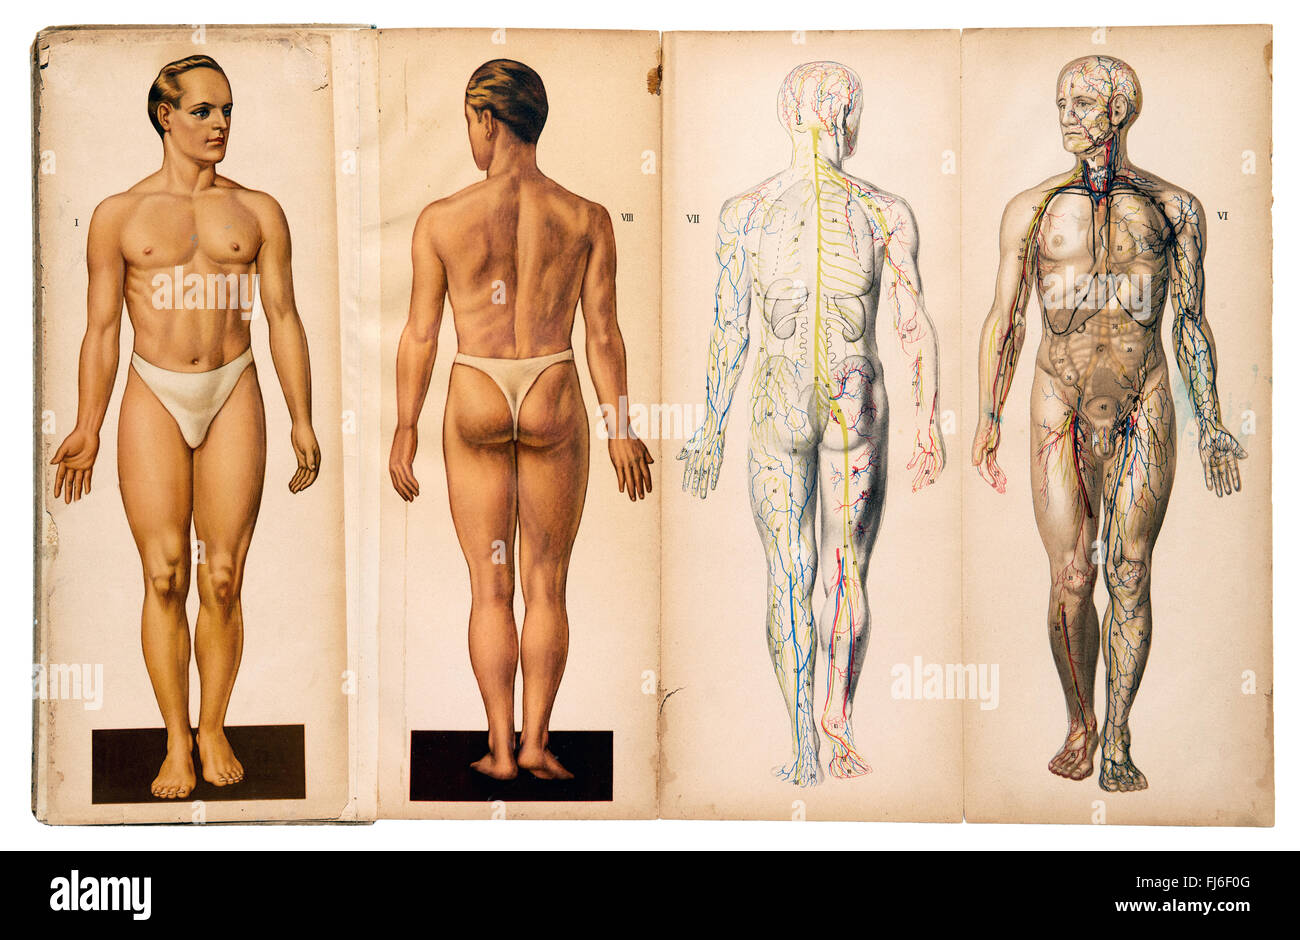 Old vintage masculina Anatomía médica gráficos Foto de stock